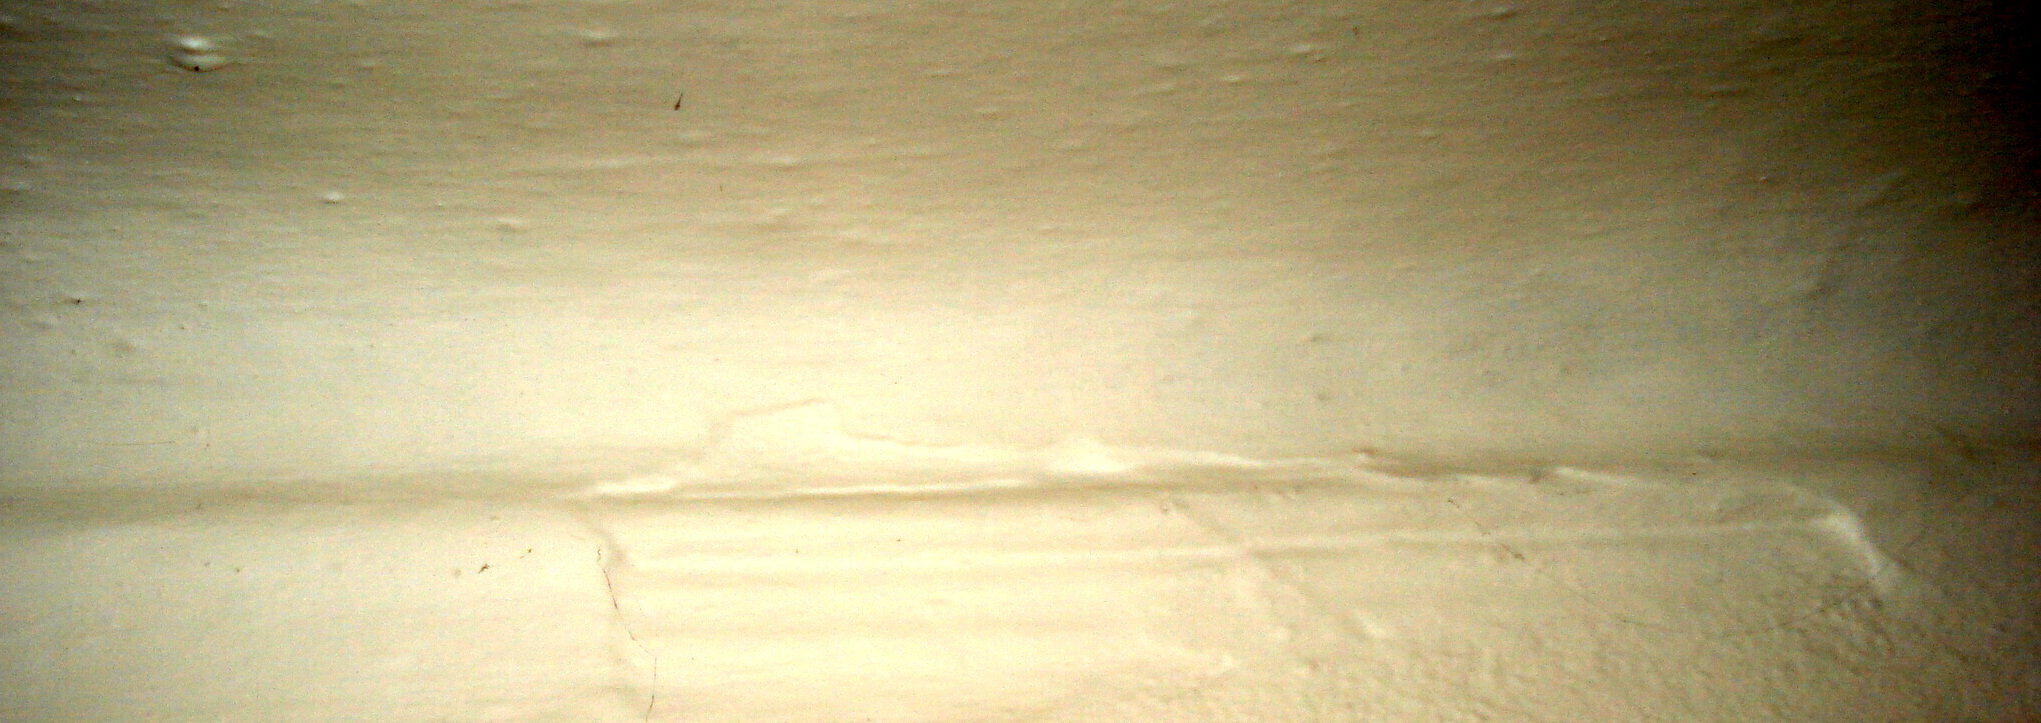 06 Místnost 3 - Detail římsy pod stropem